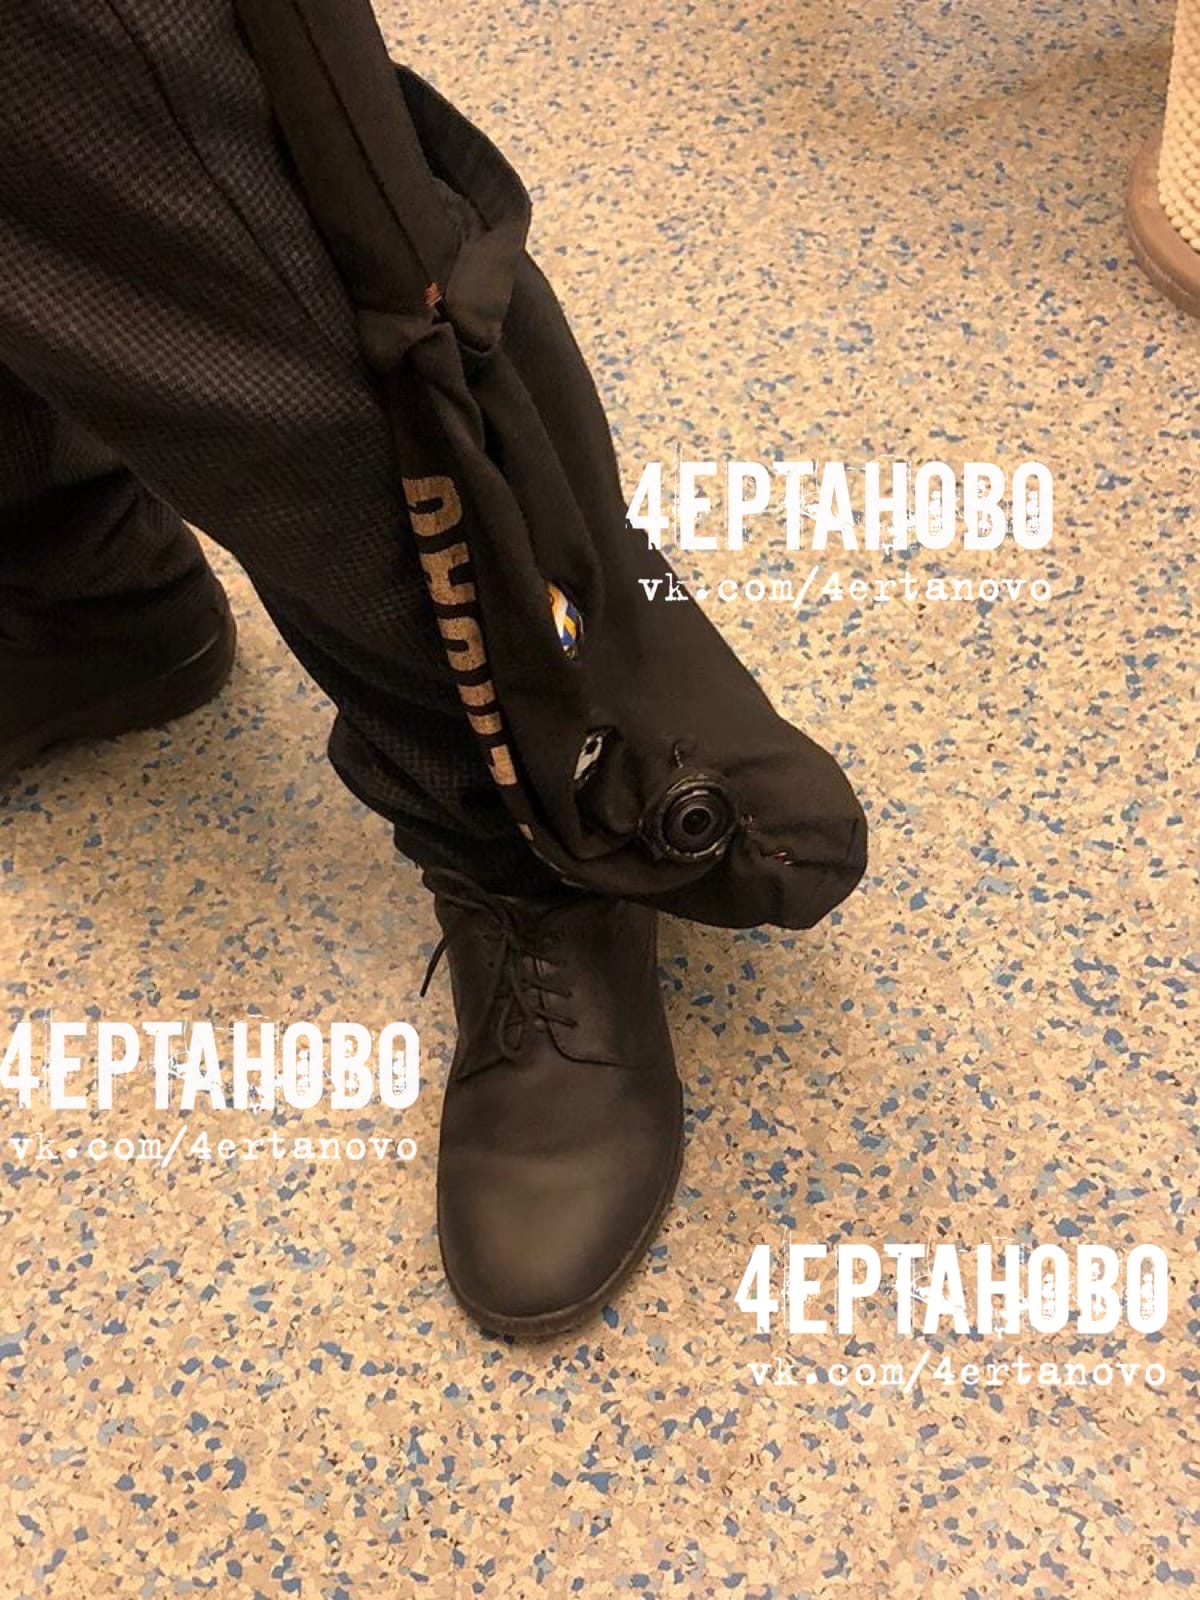 Трется в метро членом - недюжинная коллекция порно видео на kingplayclub.ru